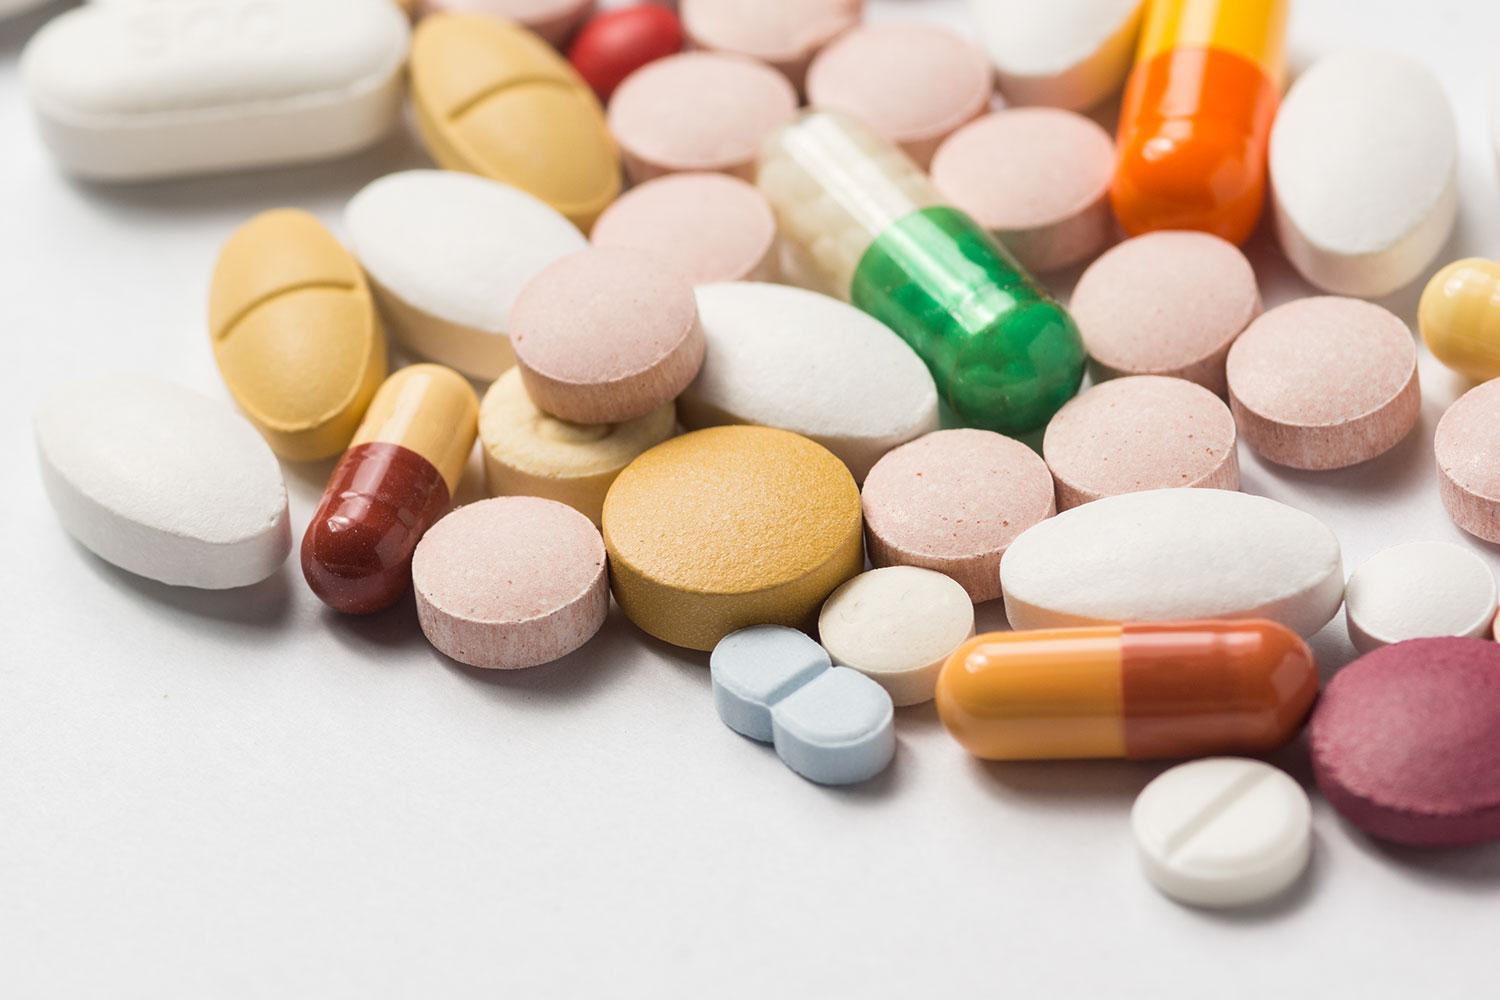 ”Bäst vore om man kunde förstatliga läkemedelsindustrin”, säger överläkare Peik Gustafsson.